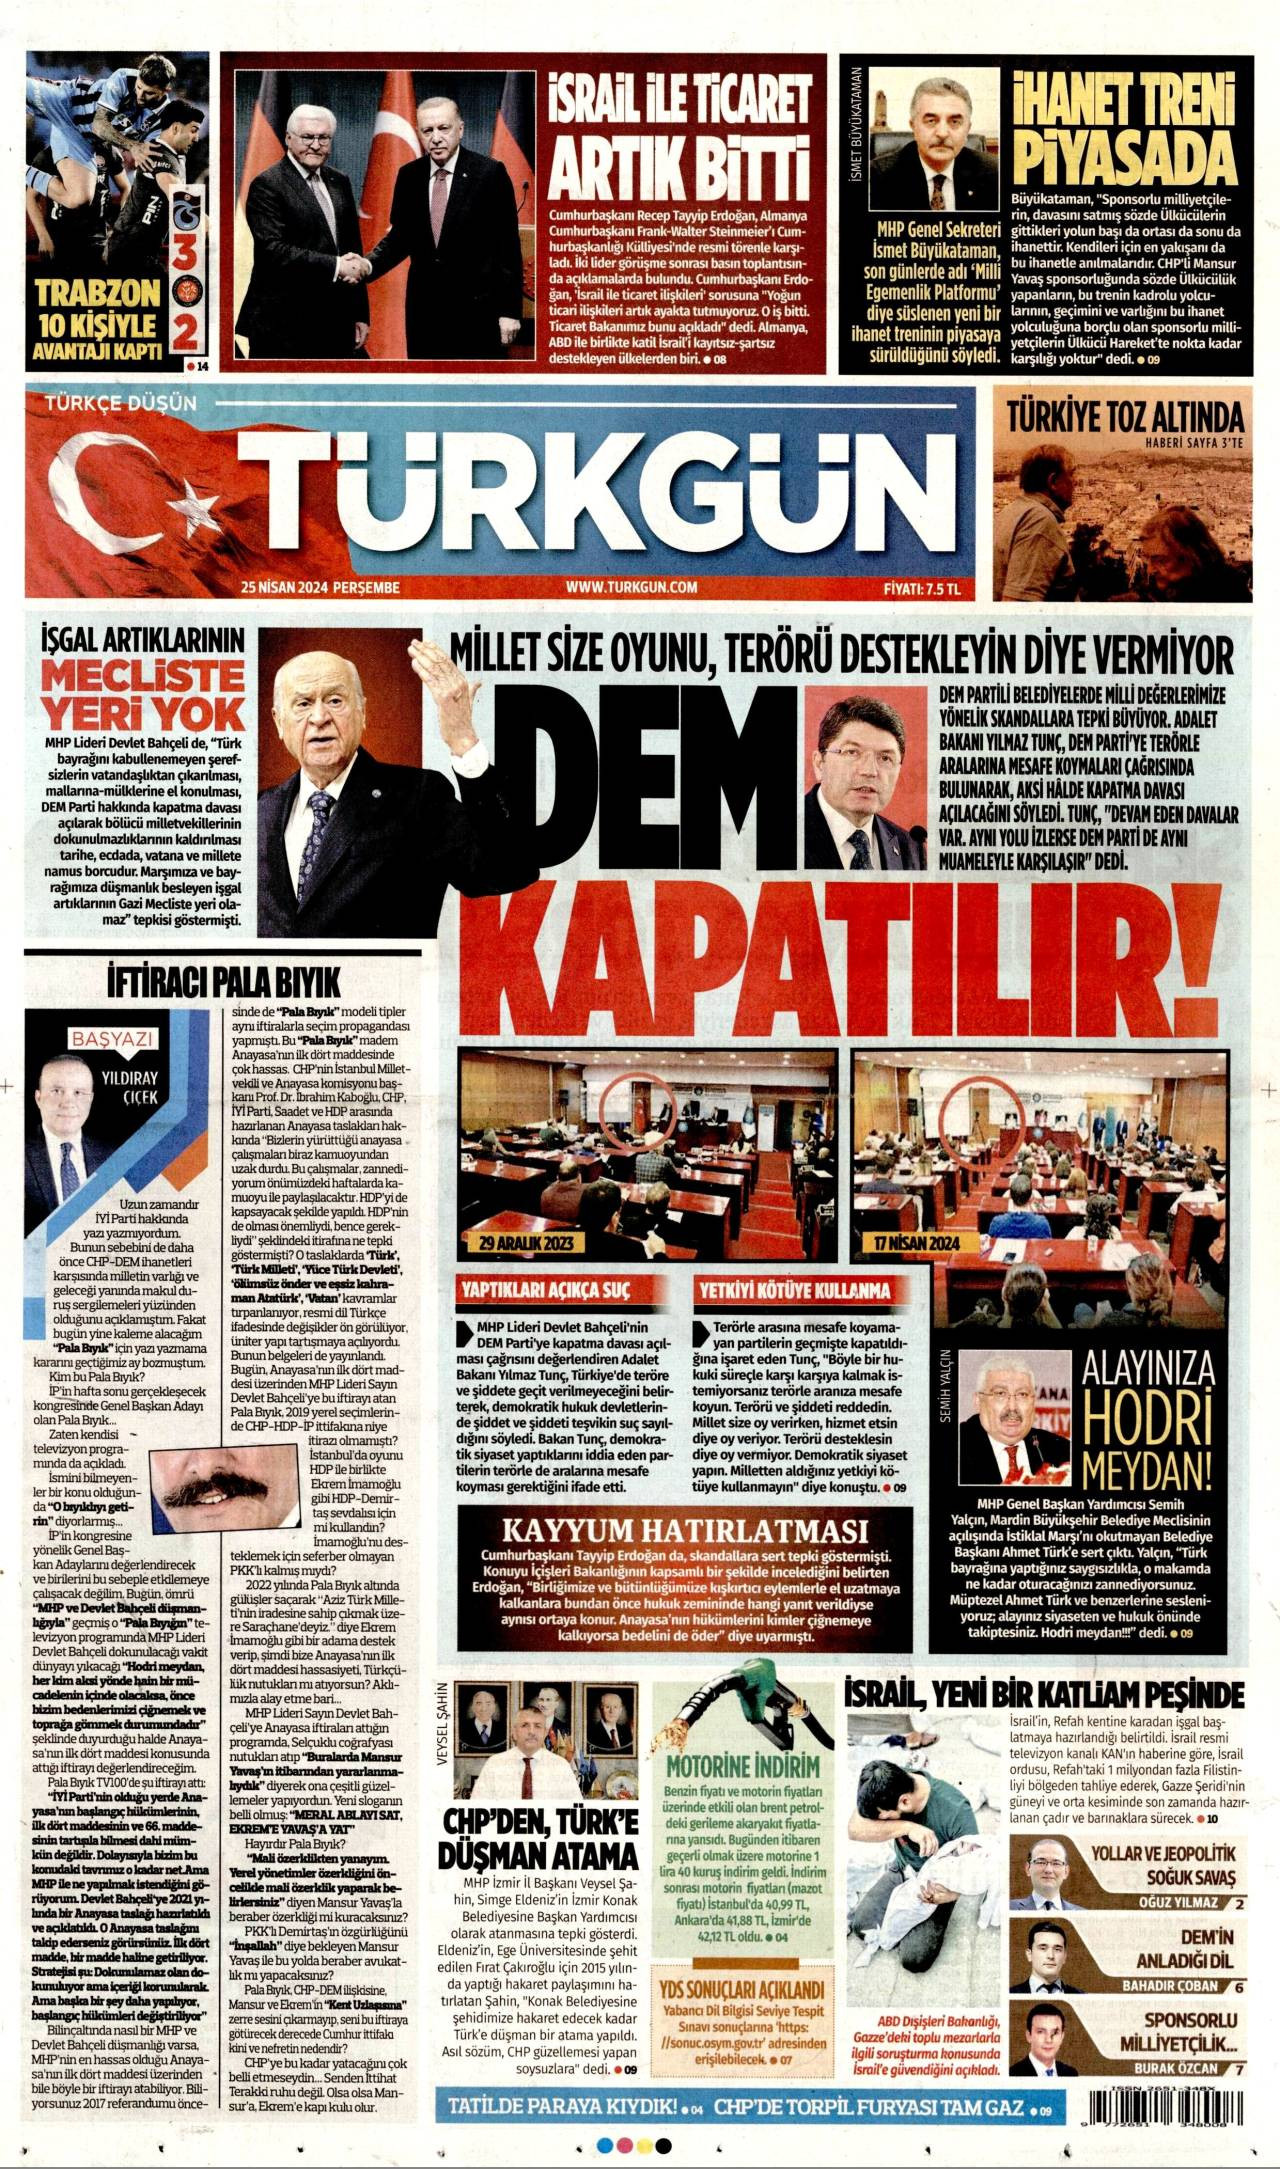 Türkgün gazetesi oku